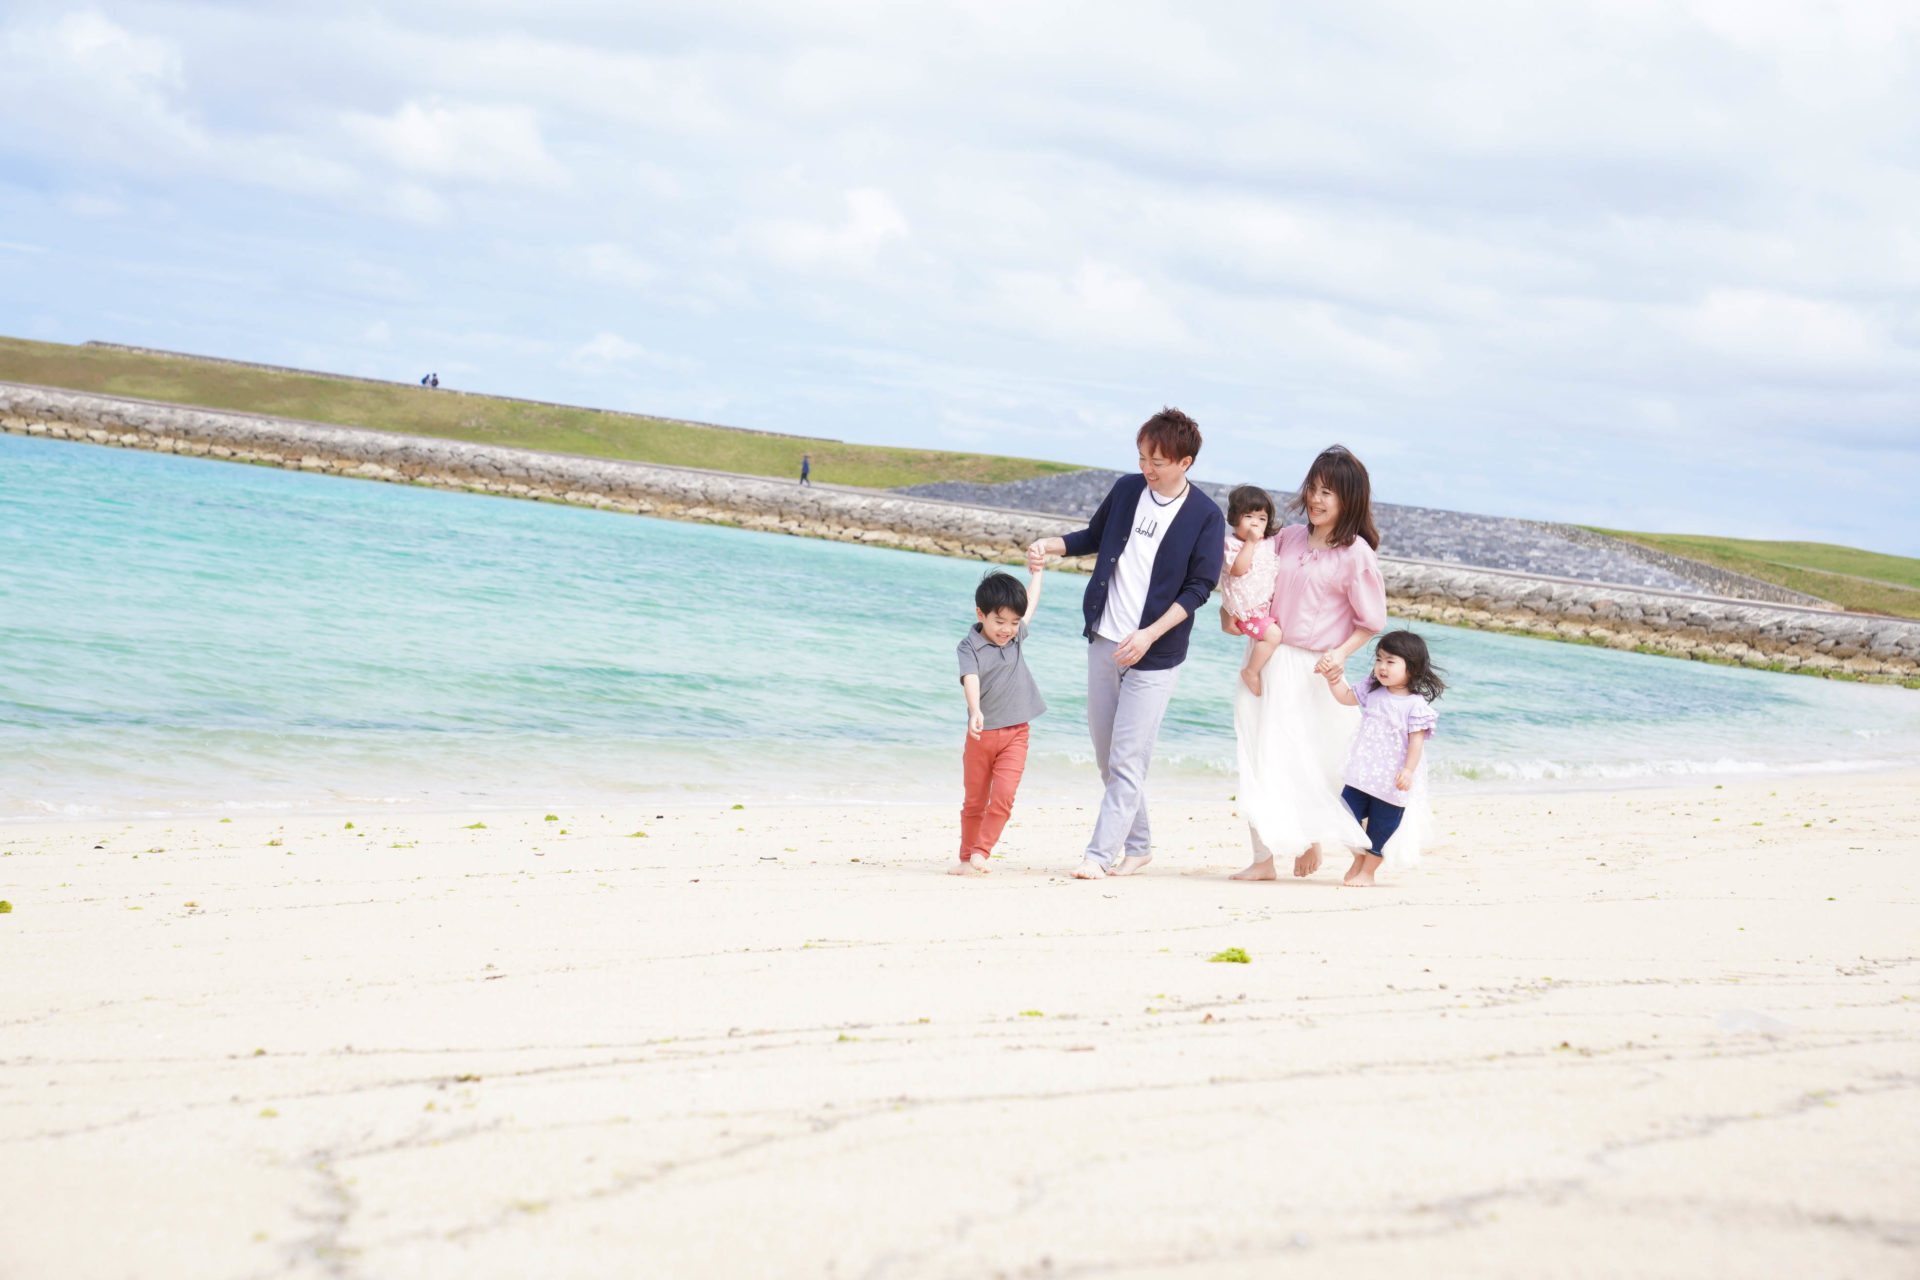 スカイブルーの海を背景に、パパ、ママ、お子様3人で仲良くお散歩中